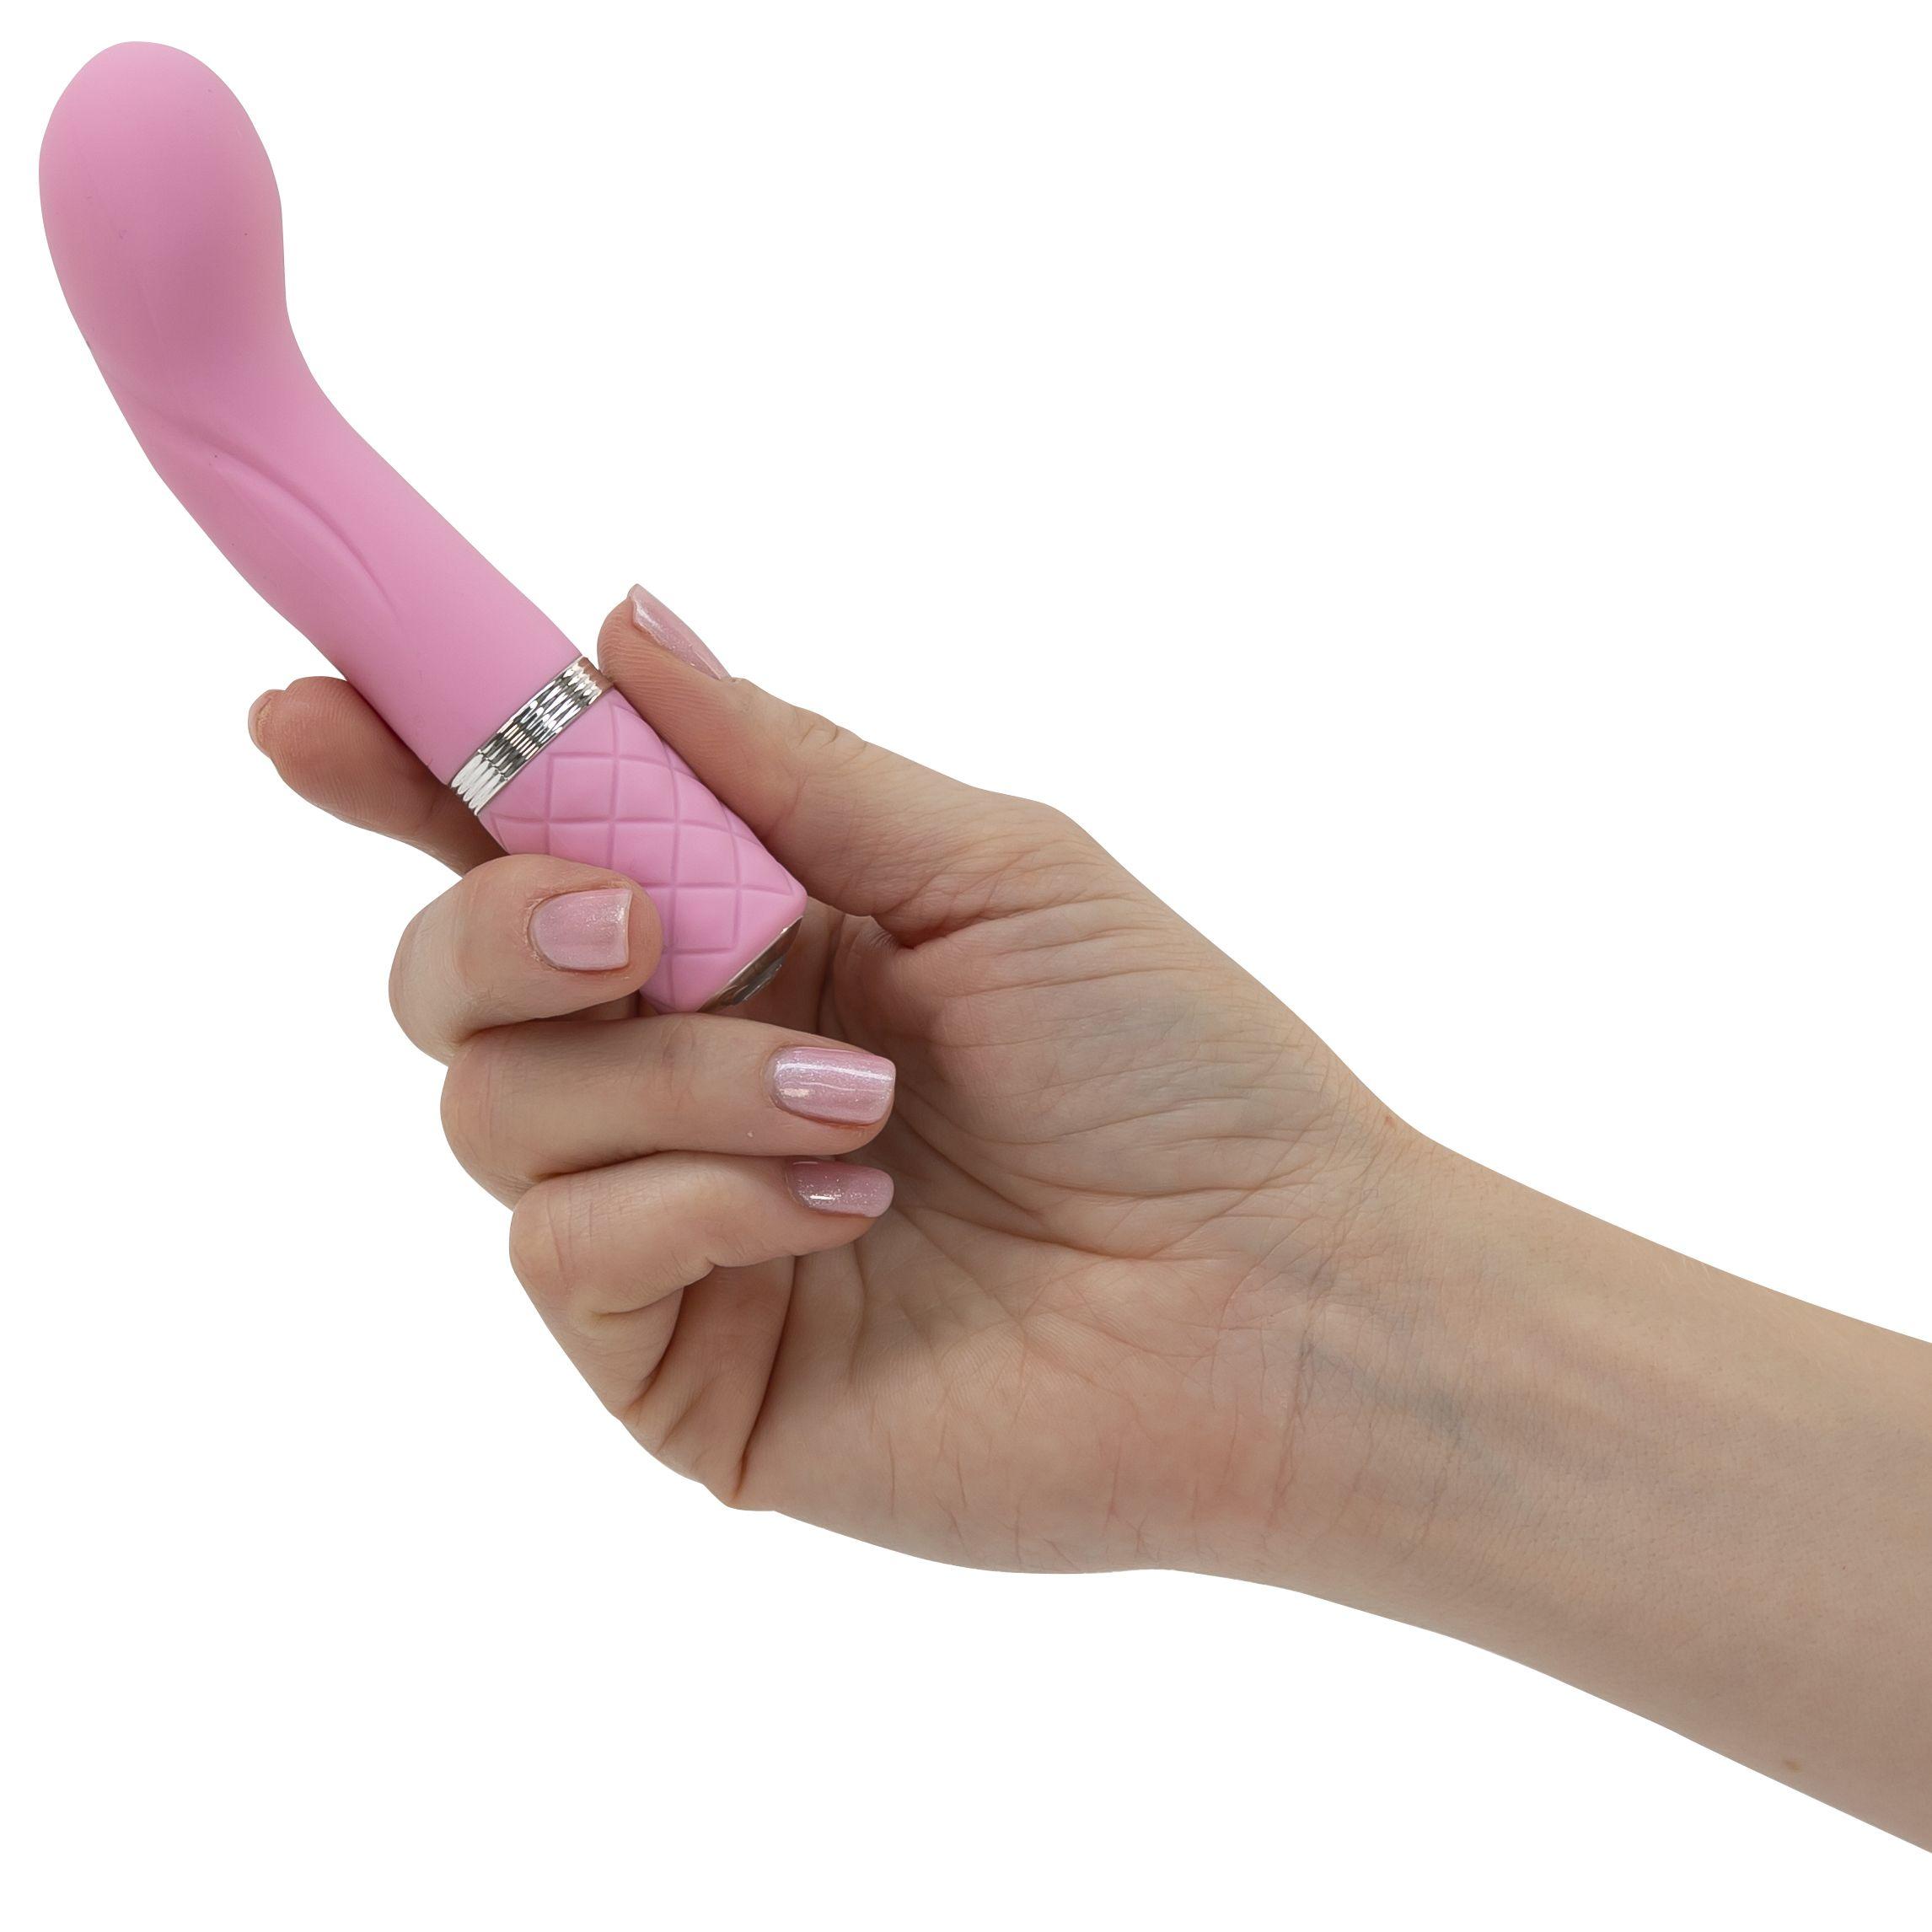 PILLOW TALK Pillow Mini - g-punkt-vibratoren Racy Pink Talk G-Spot Vibrator